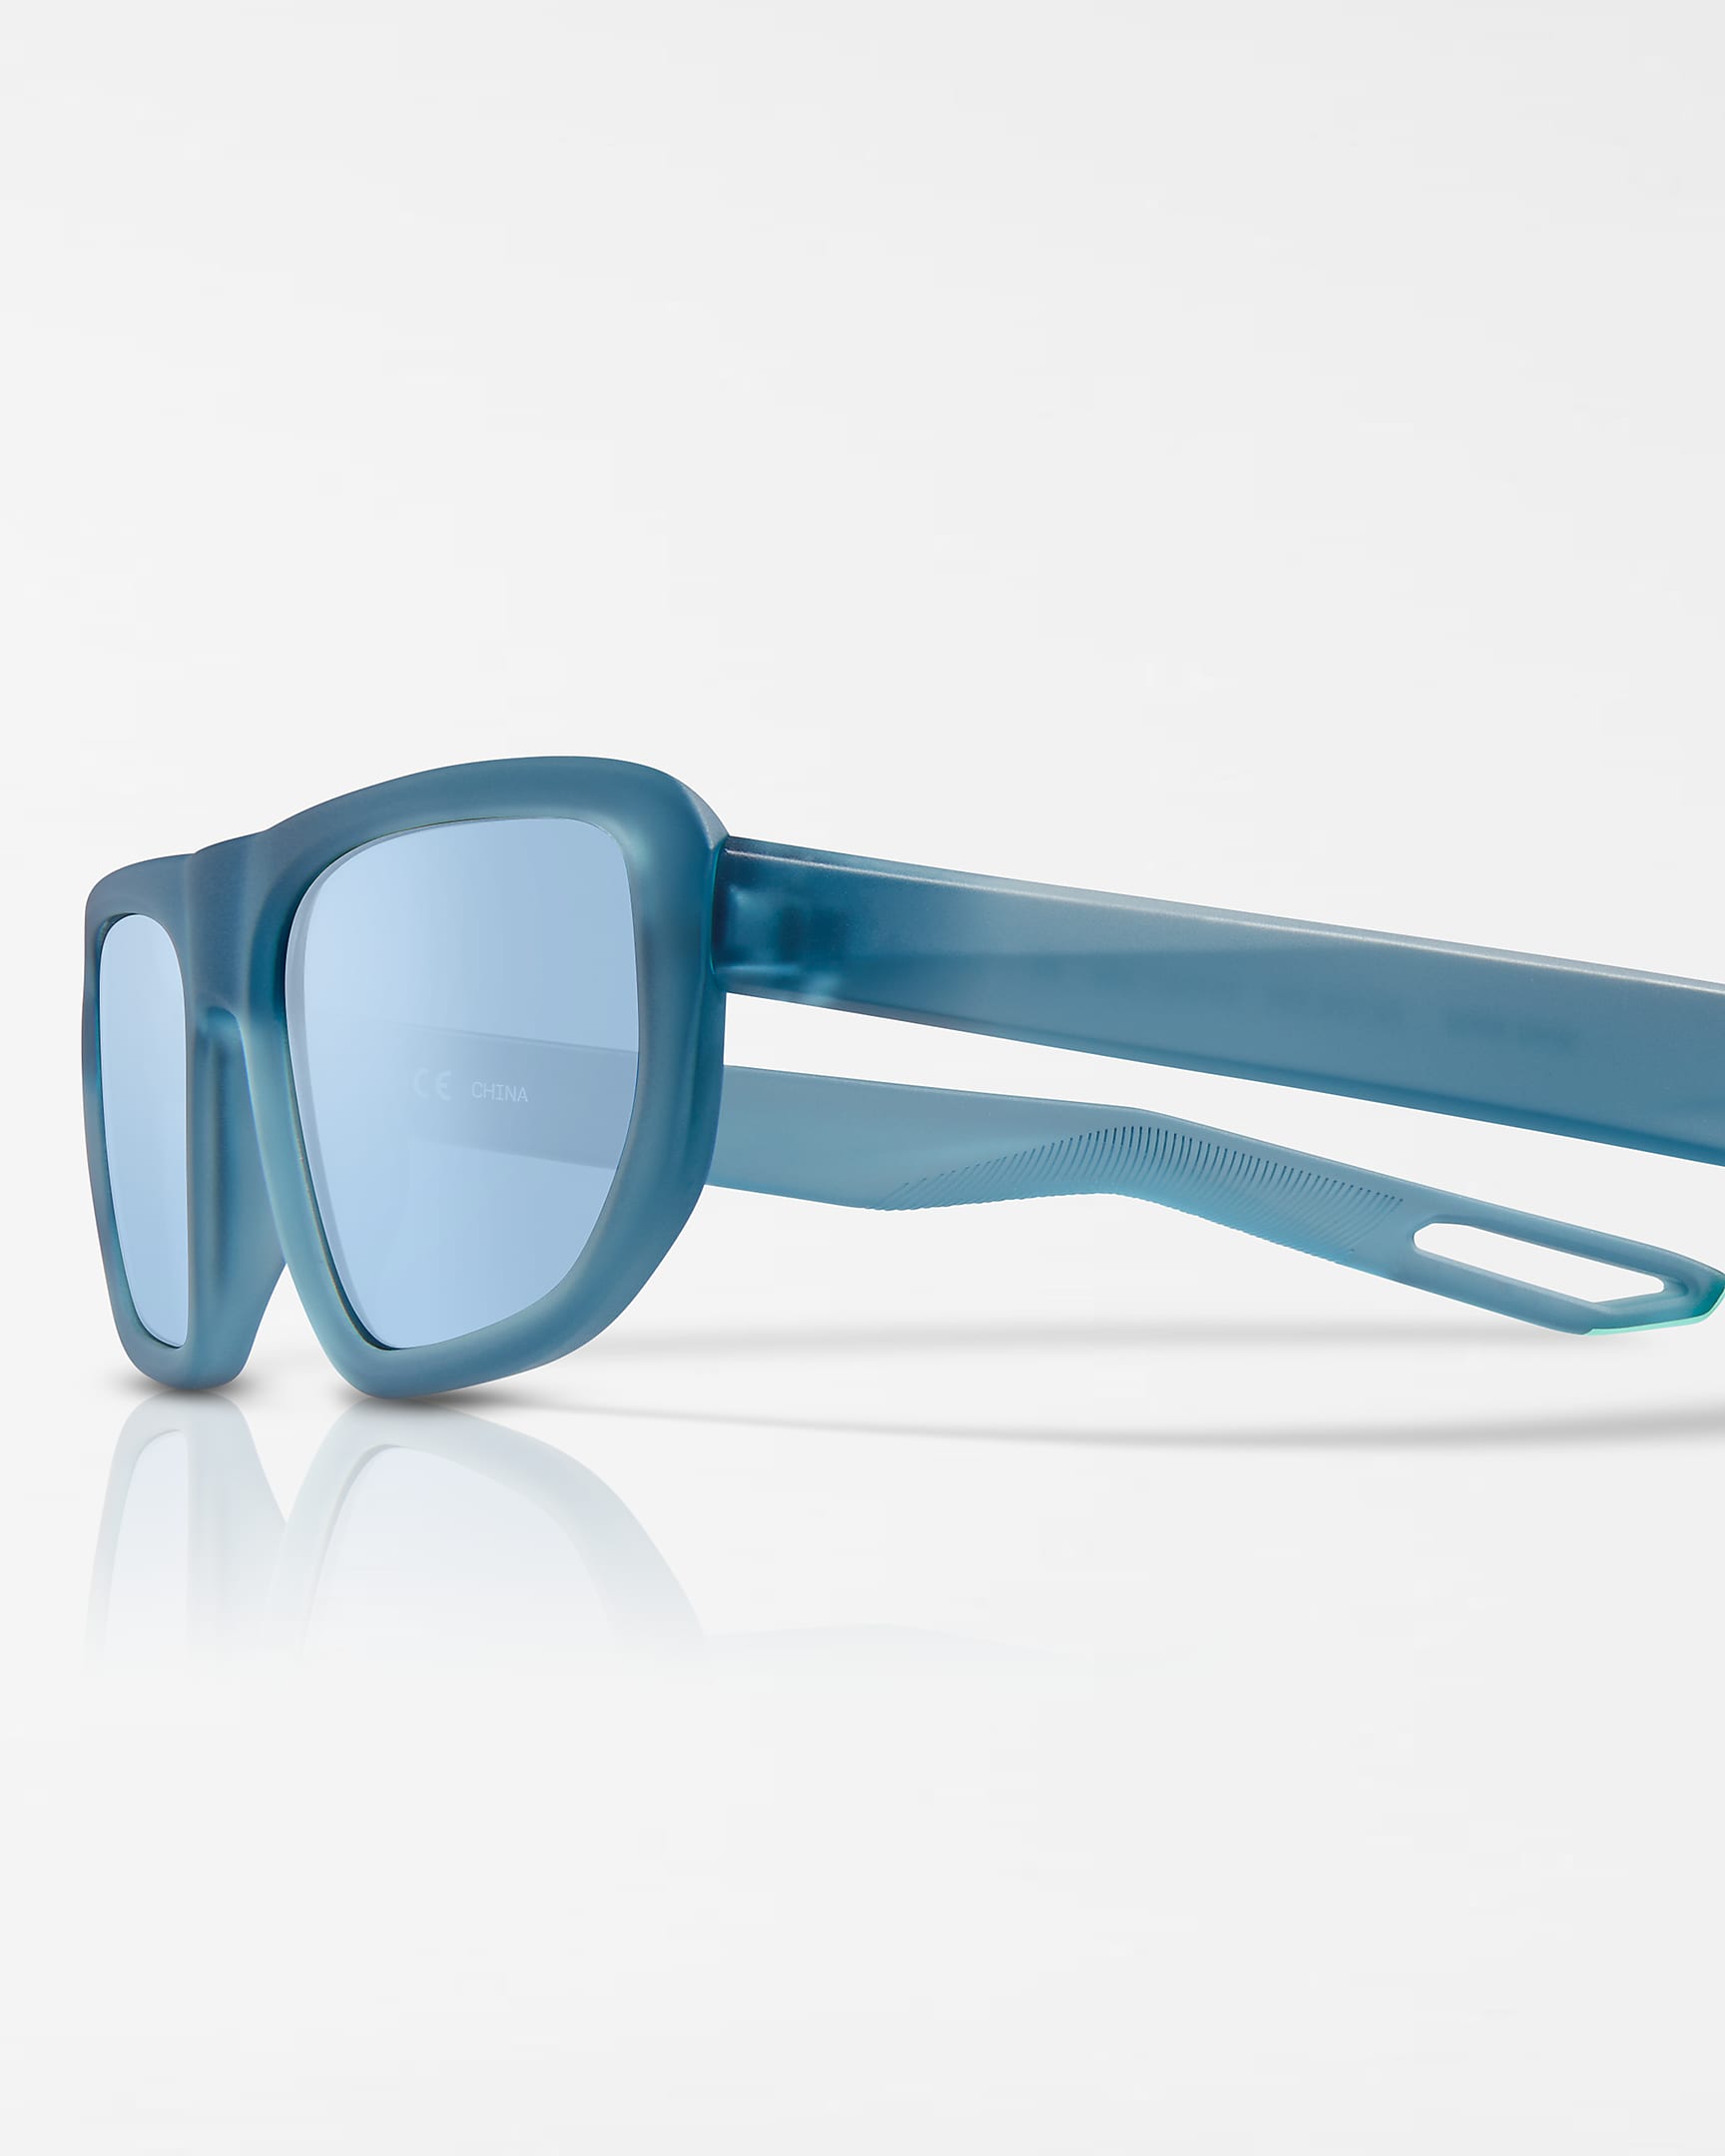 Nike NV04 Sunglasses - Worn Blue/Green Glow